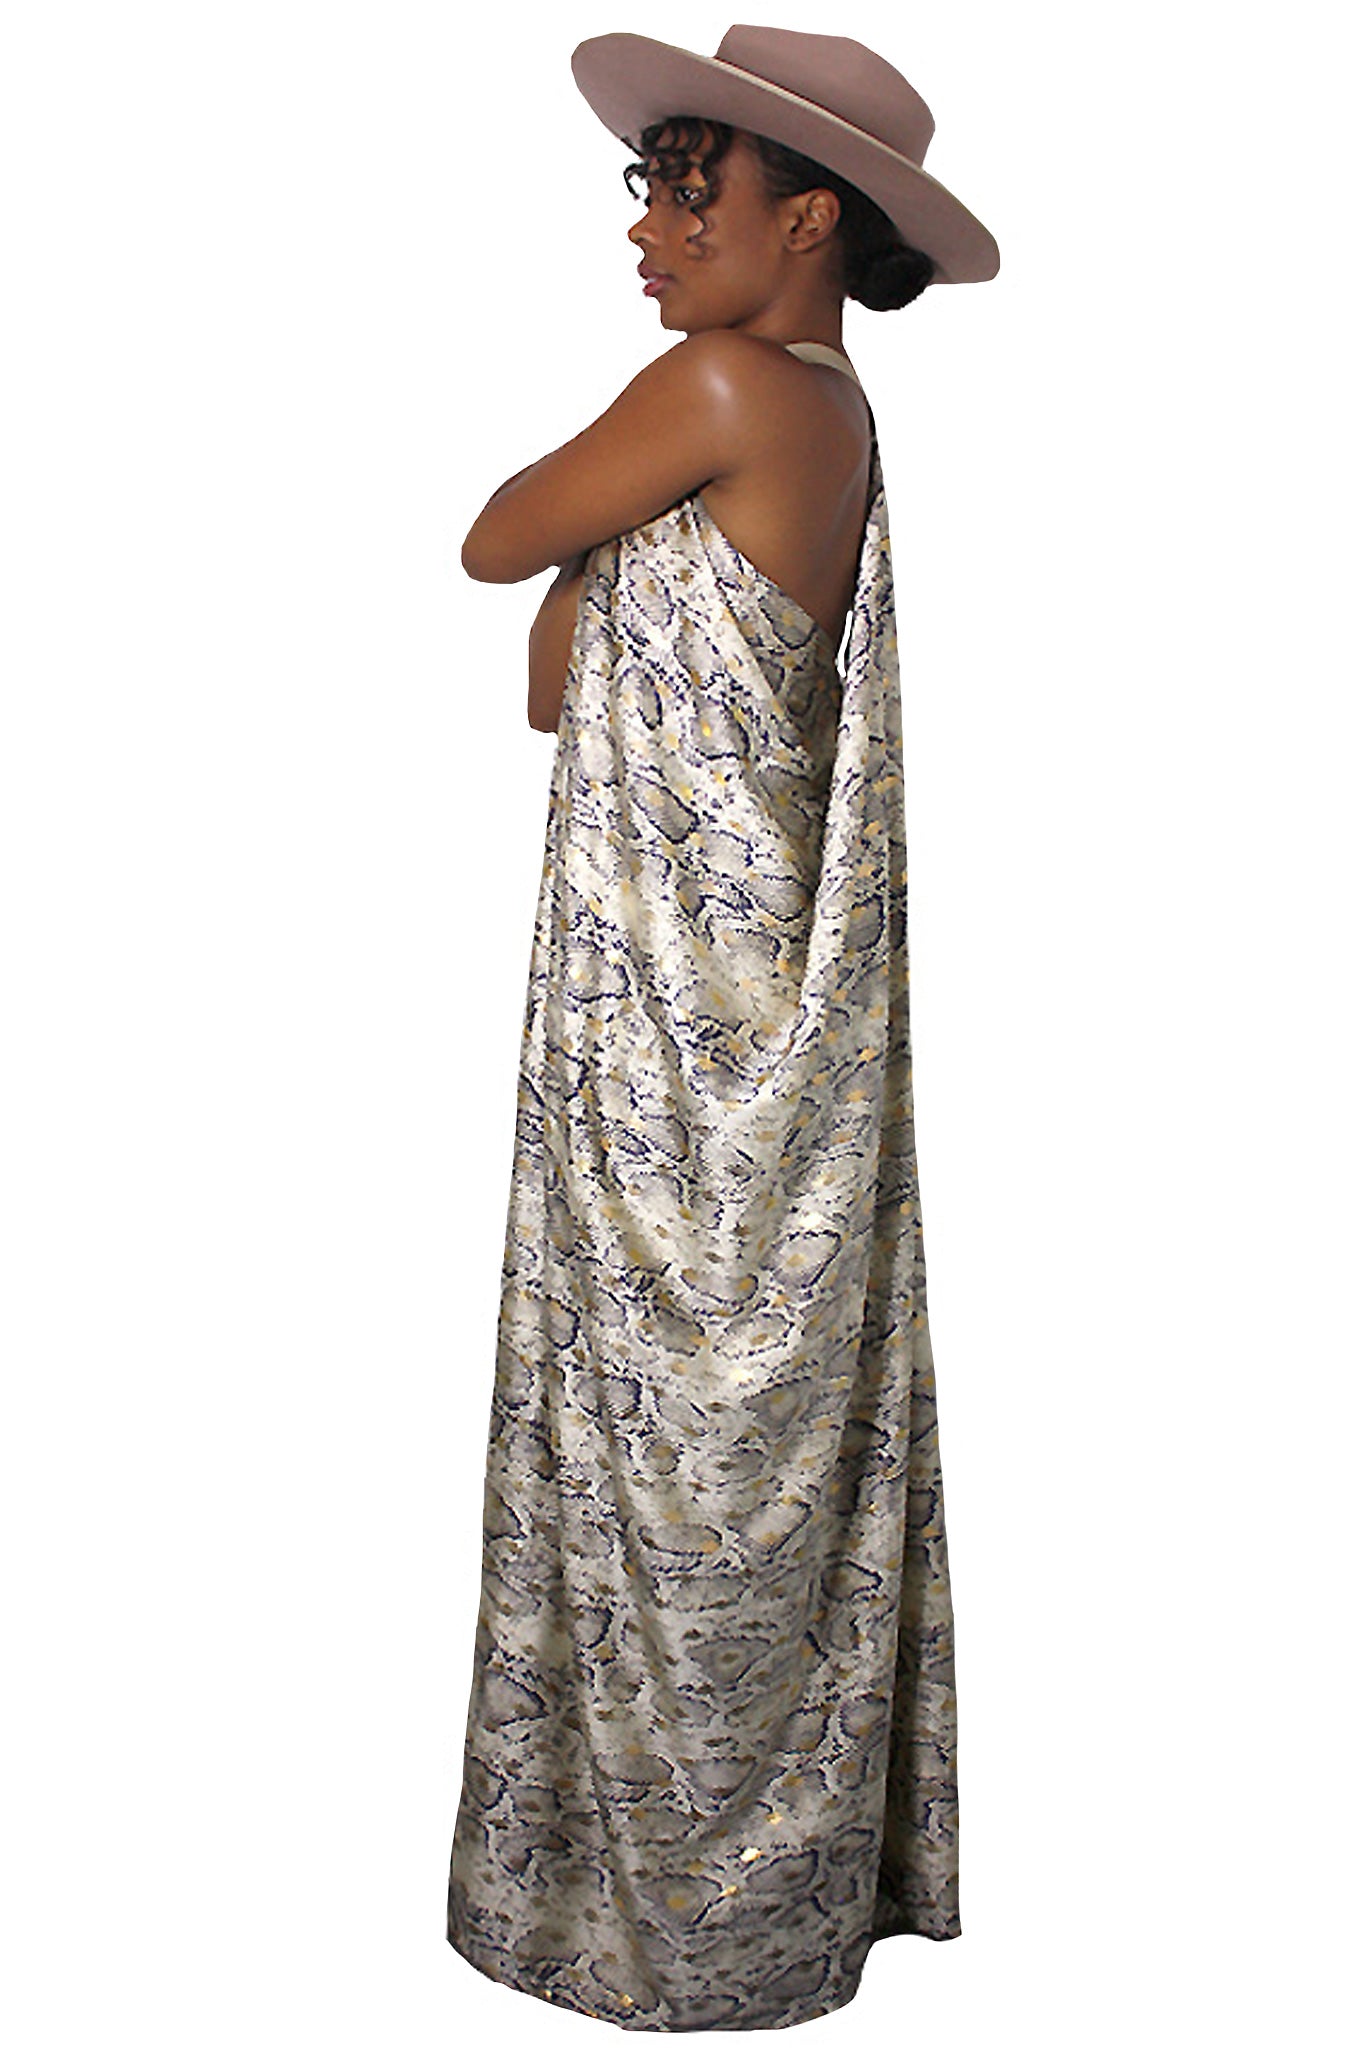 Snakeskin Metallic Goddess Dress